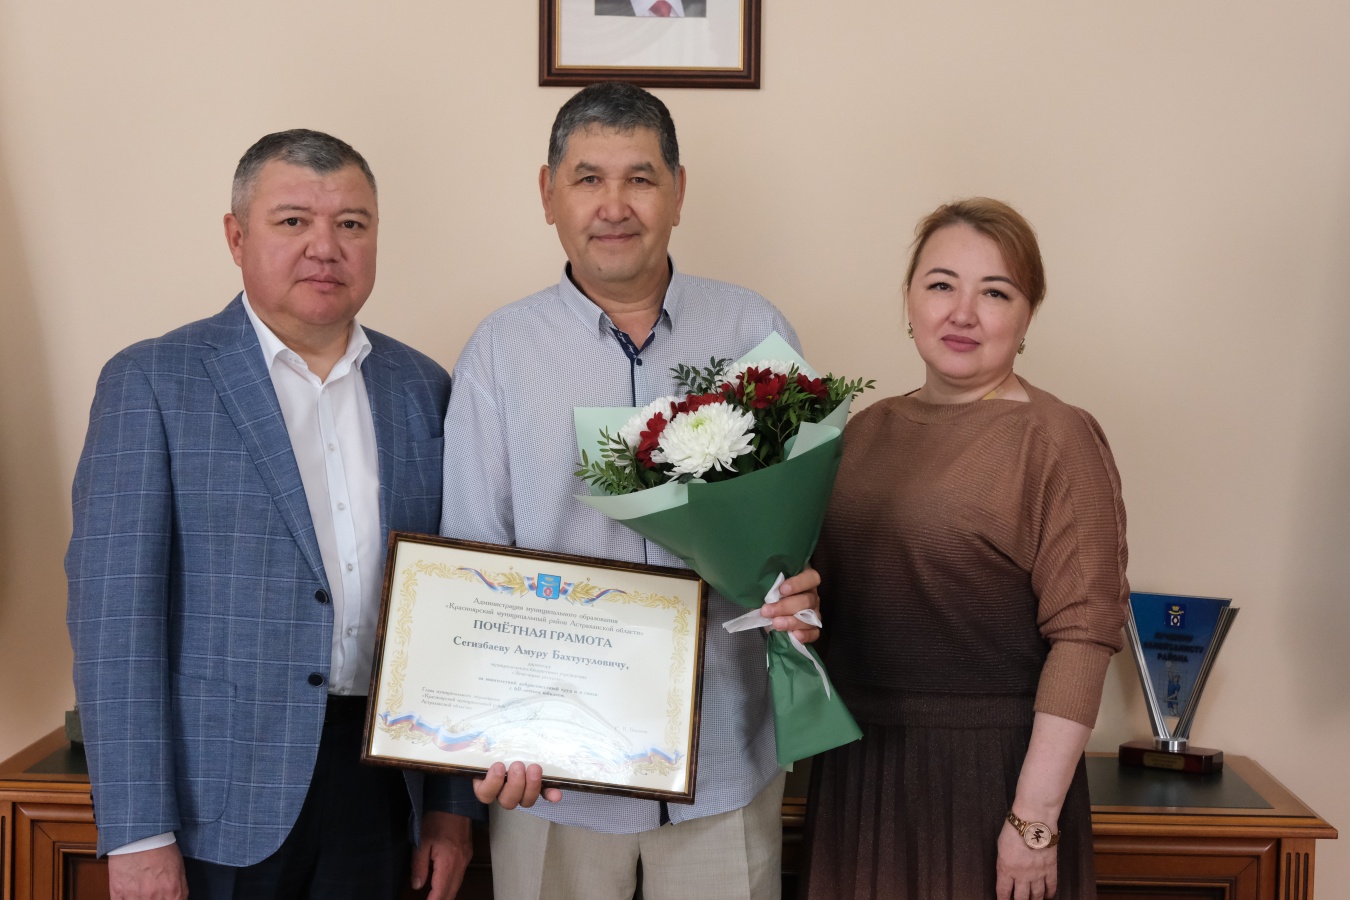  Глава Красноярского района поздравил директора МБУ «Земельные ресурсы» с юбилеем